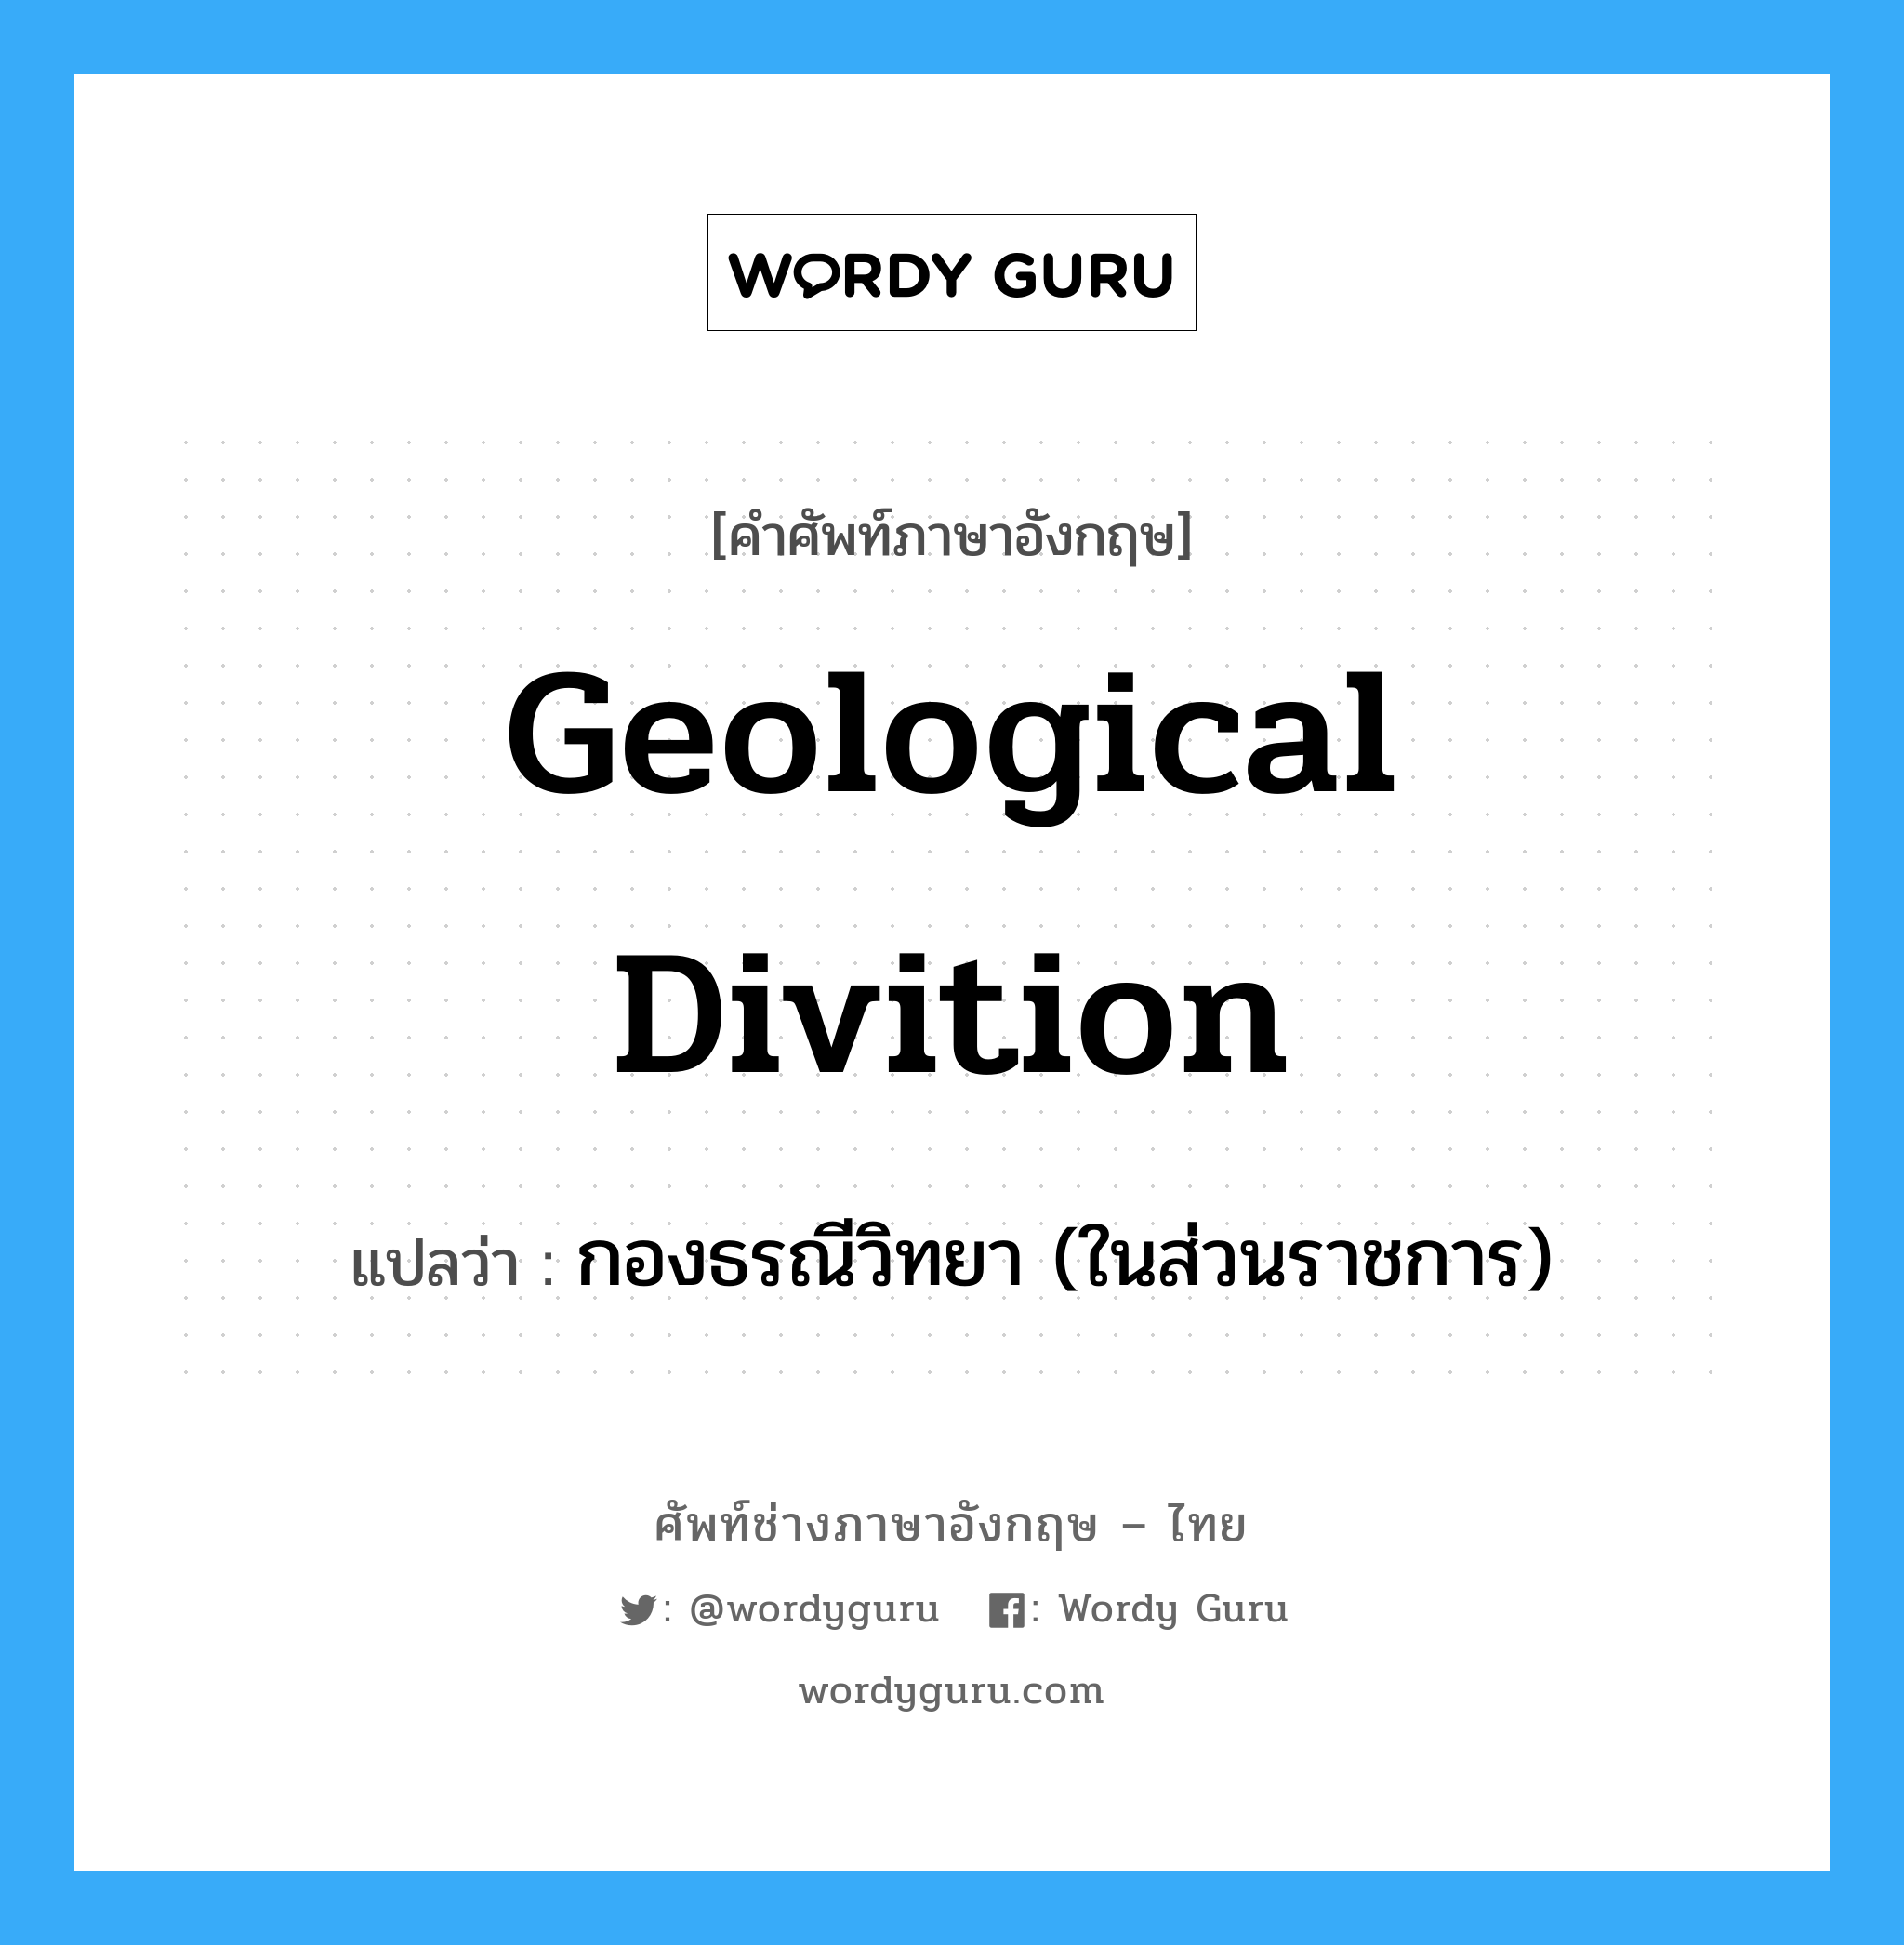 กองธรณีวิทยา (ในส่วนราชการ) ภาษาอังกฤษ?, คำศัพท์ช่างภาษาอังกฤษ - ไทย กองธรณีวิทยา (ในส่วนราชการ) คำศัพท์ภาษาอังกฤษ กองธรณีวิทยา (ในส่วนราชการ) แปลว่า Geological Divition